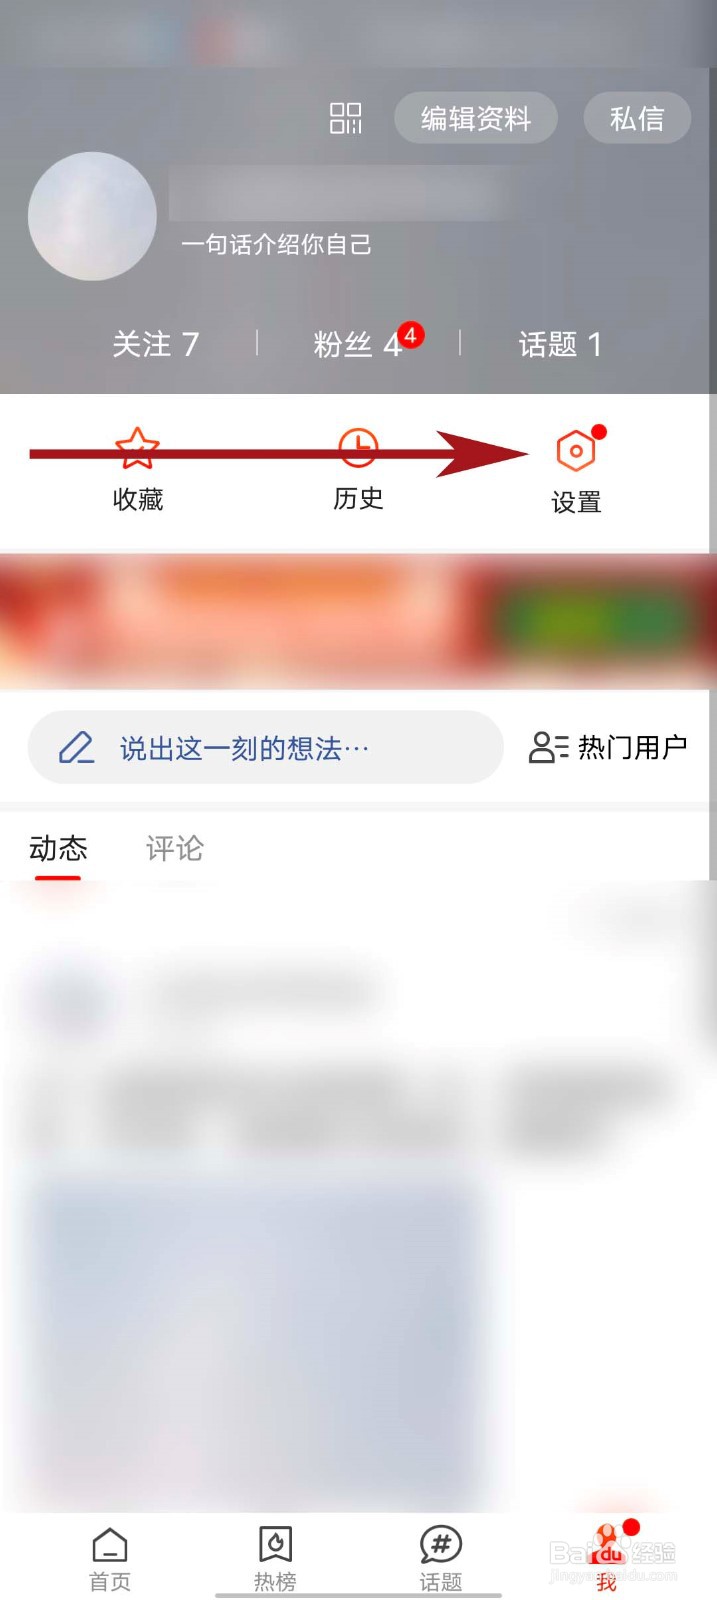 搜狐新闻首页图片